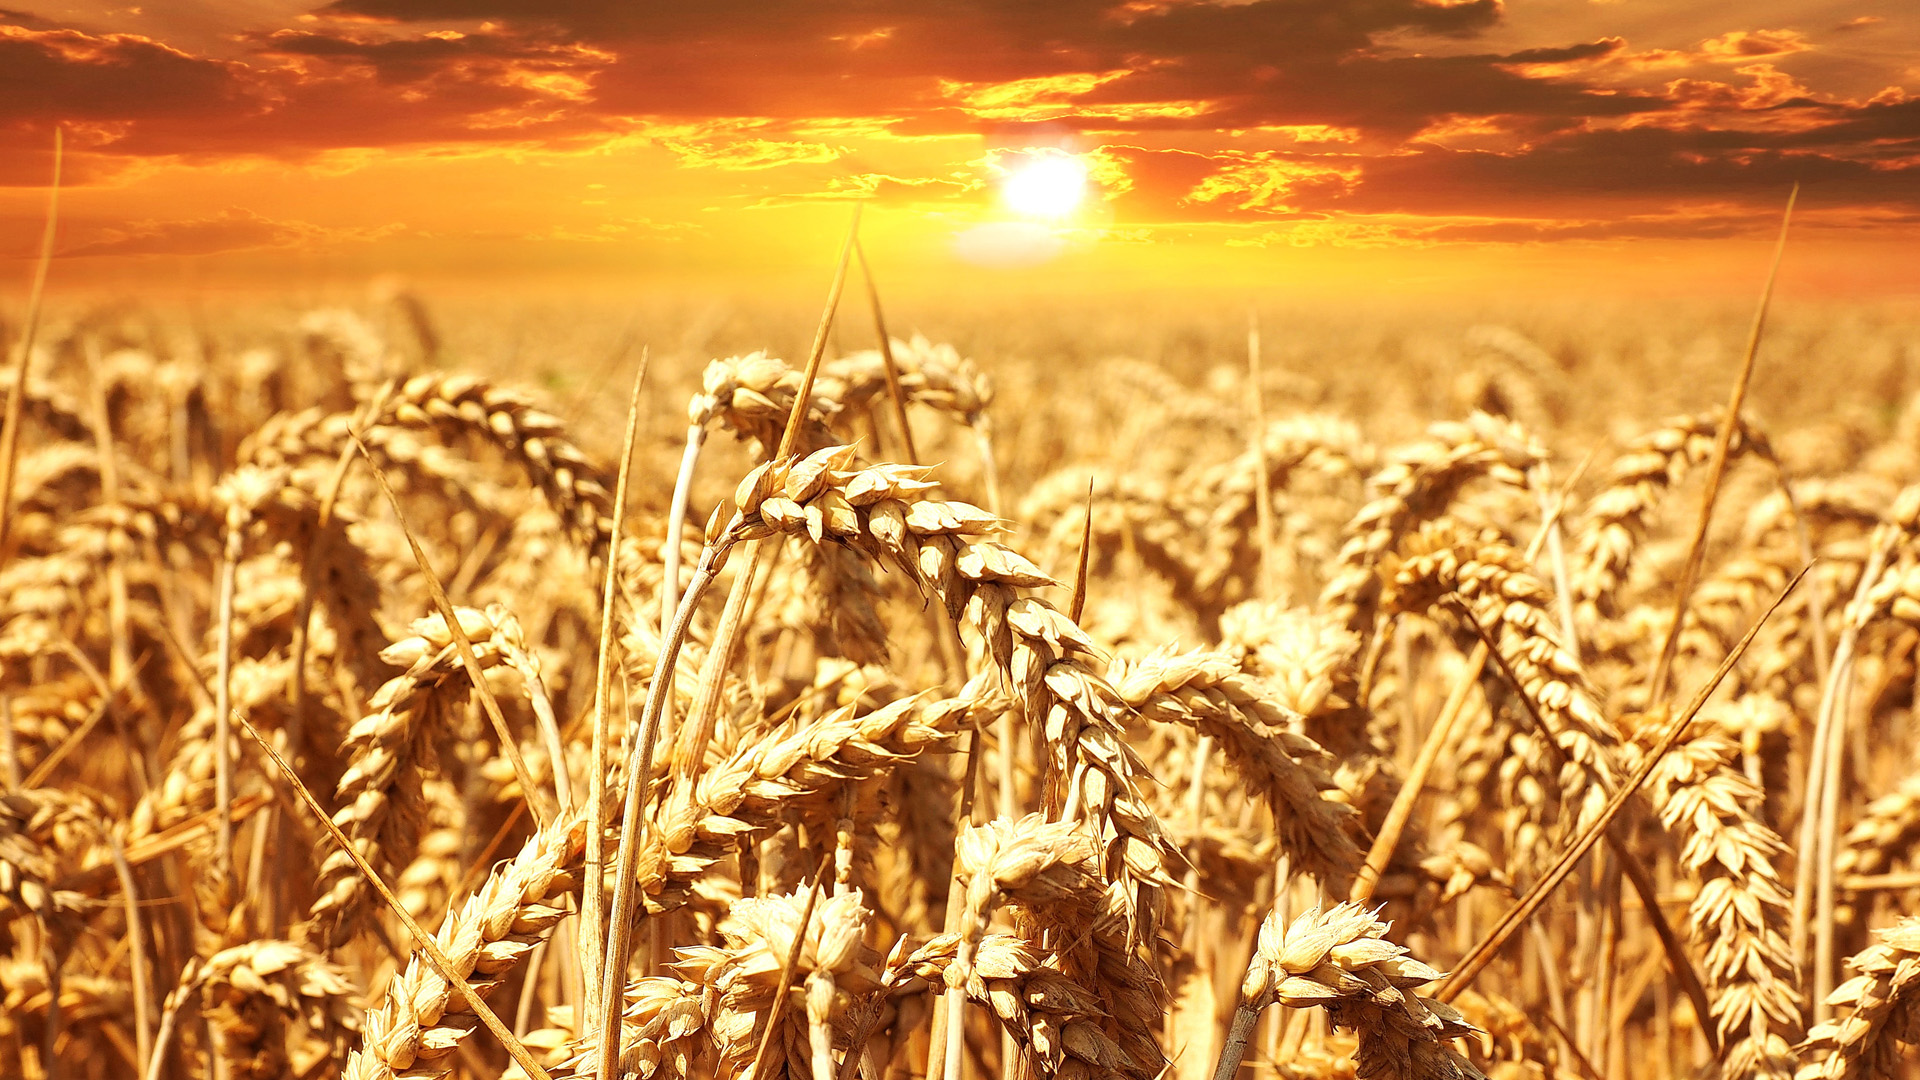 Підписано додаток до Меморандуму про взаєморозуміння, що затвердив граничні обсяги експорту пшениці на 2019/2020 маркетинговий рік